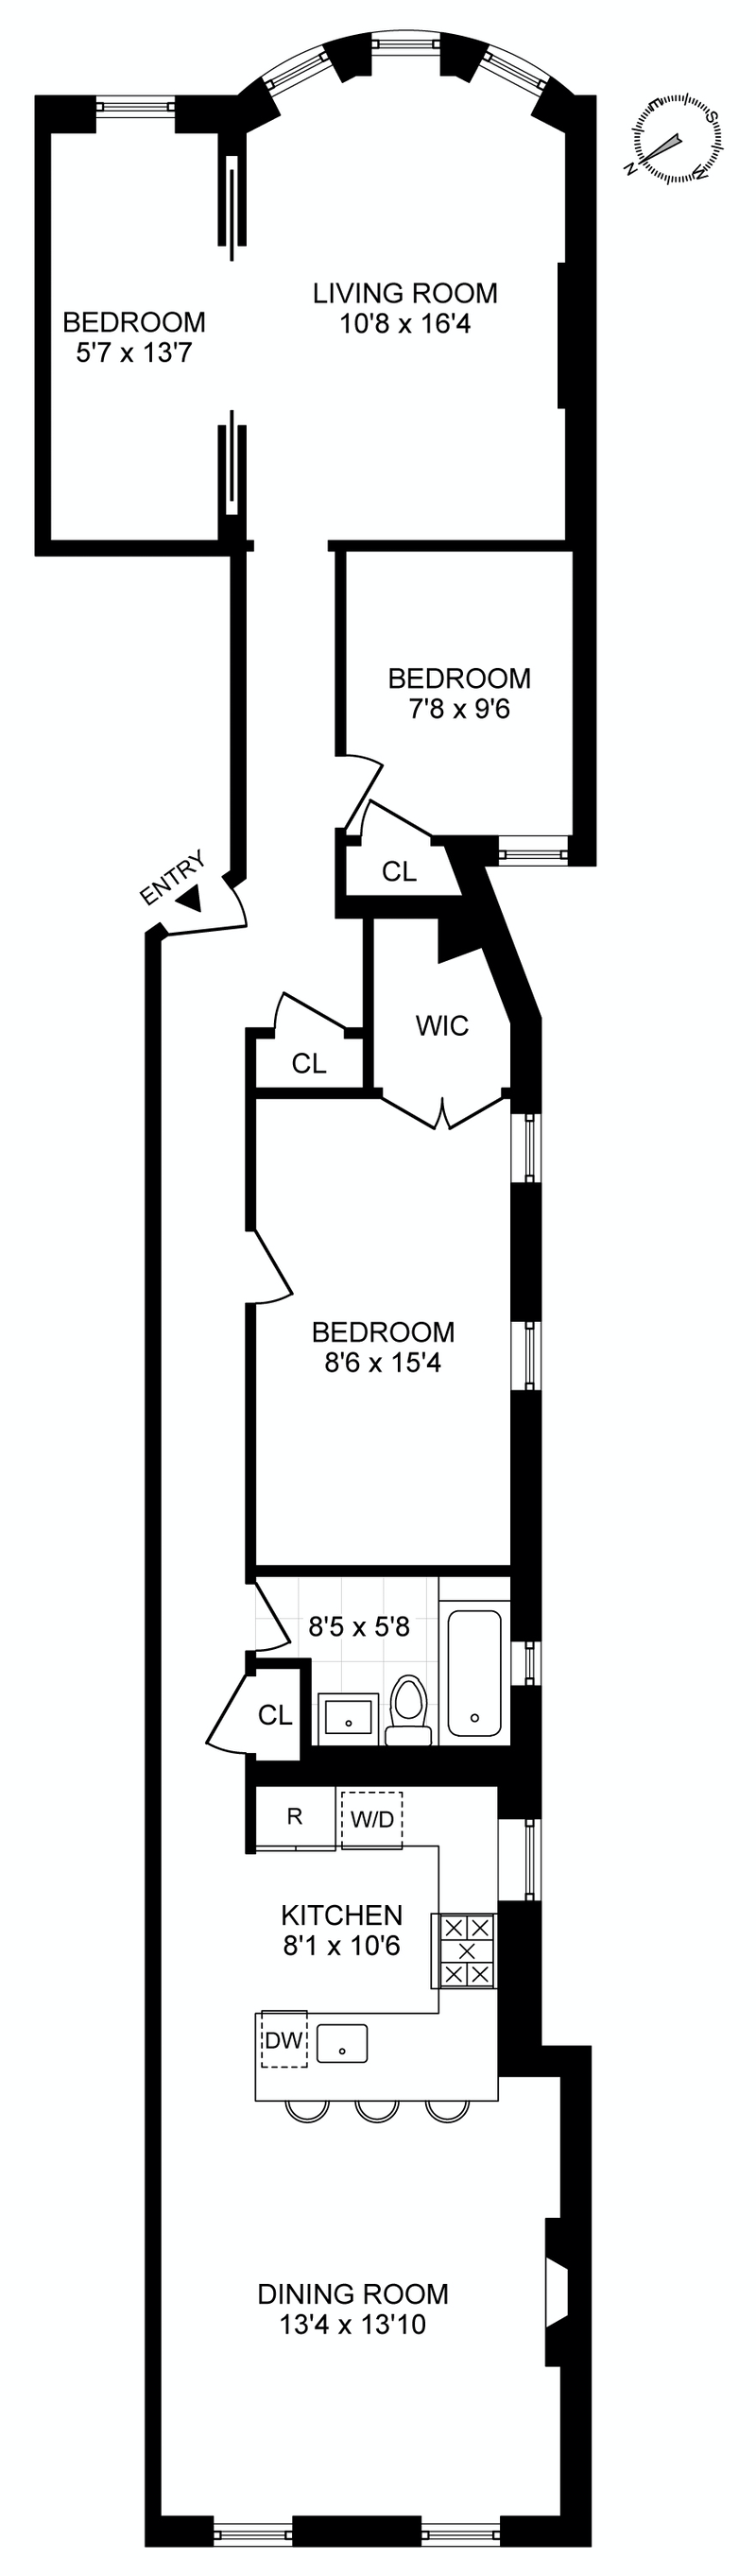 Floorplan for 712 Eighth Avenue, 2L